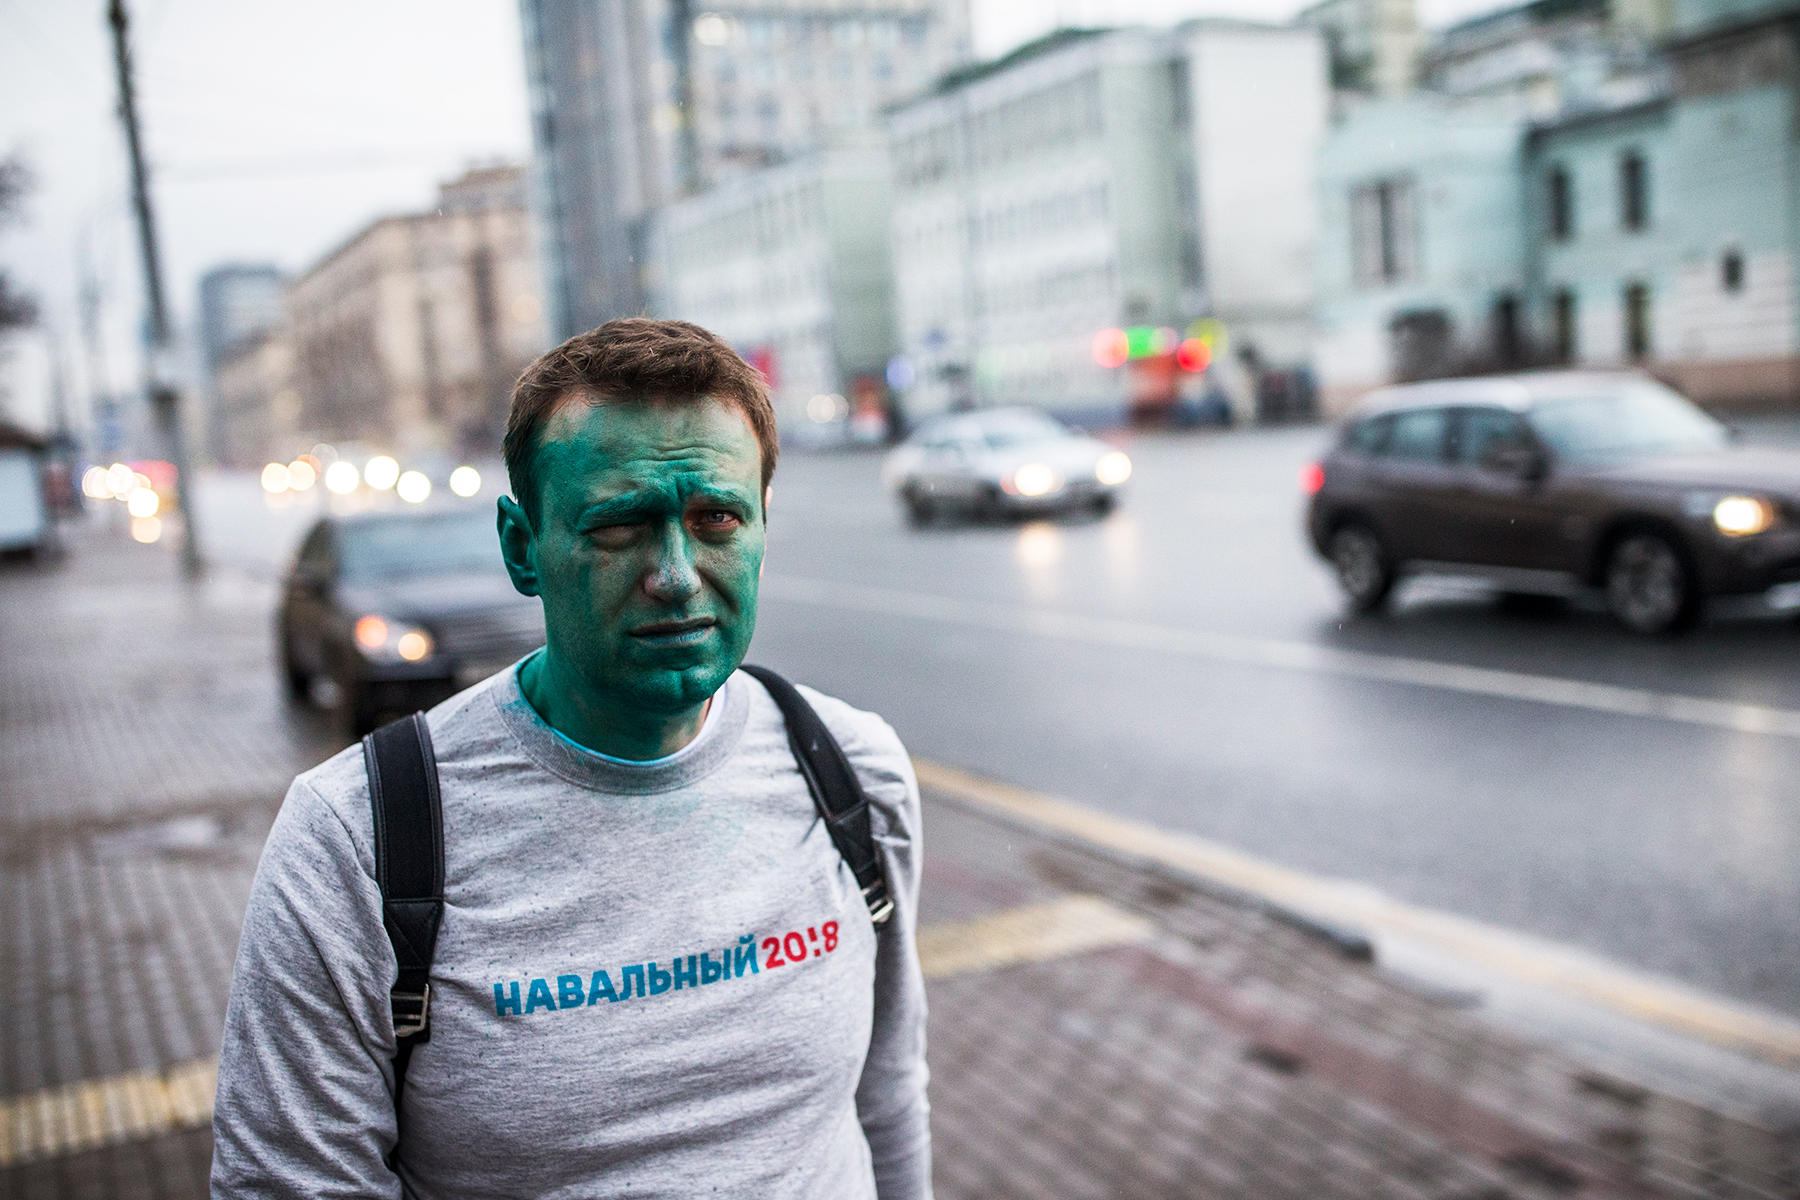 Зеленый украинец. Навального облили зелёнкой.